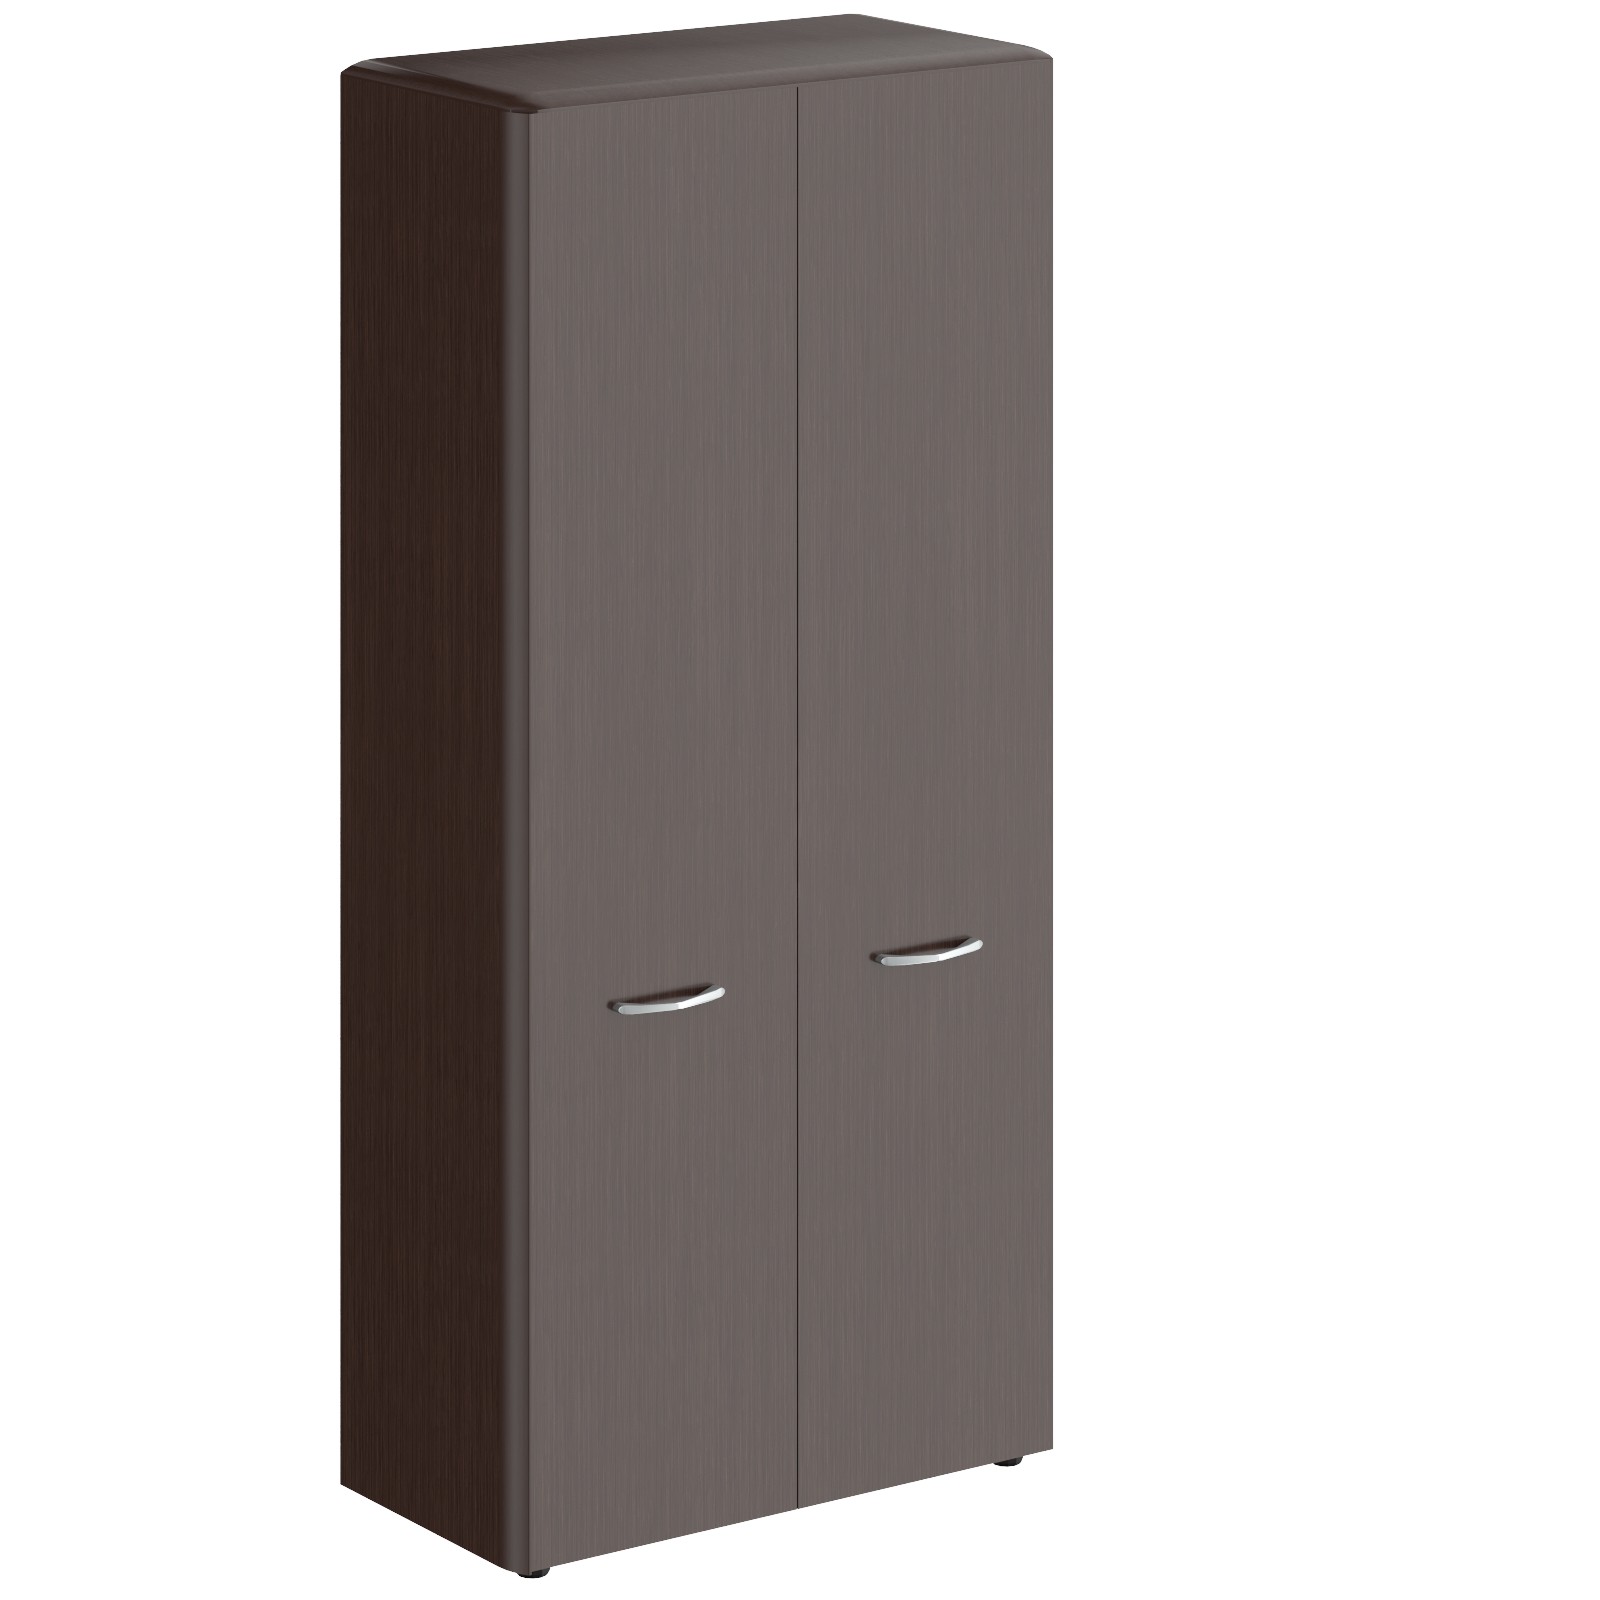 Шкаф высокий с глухими дверьми и обвязкой DIONI DHC 85.1